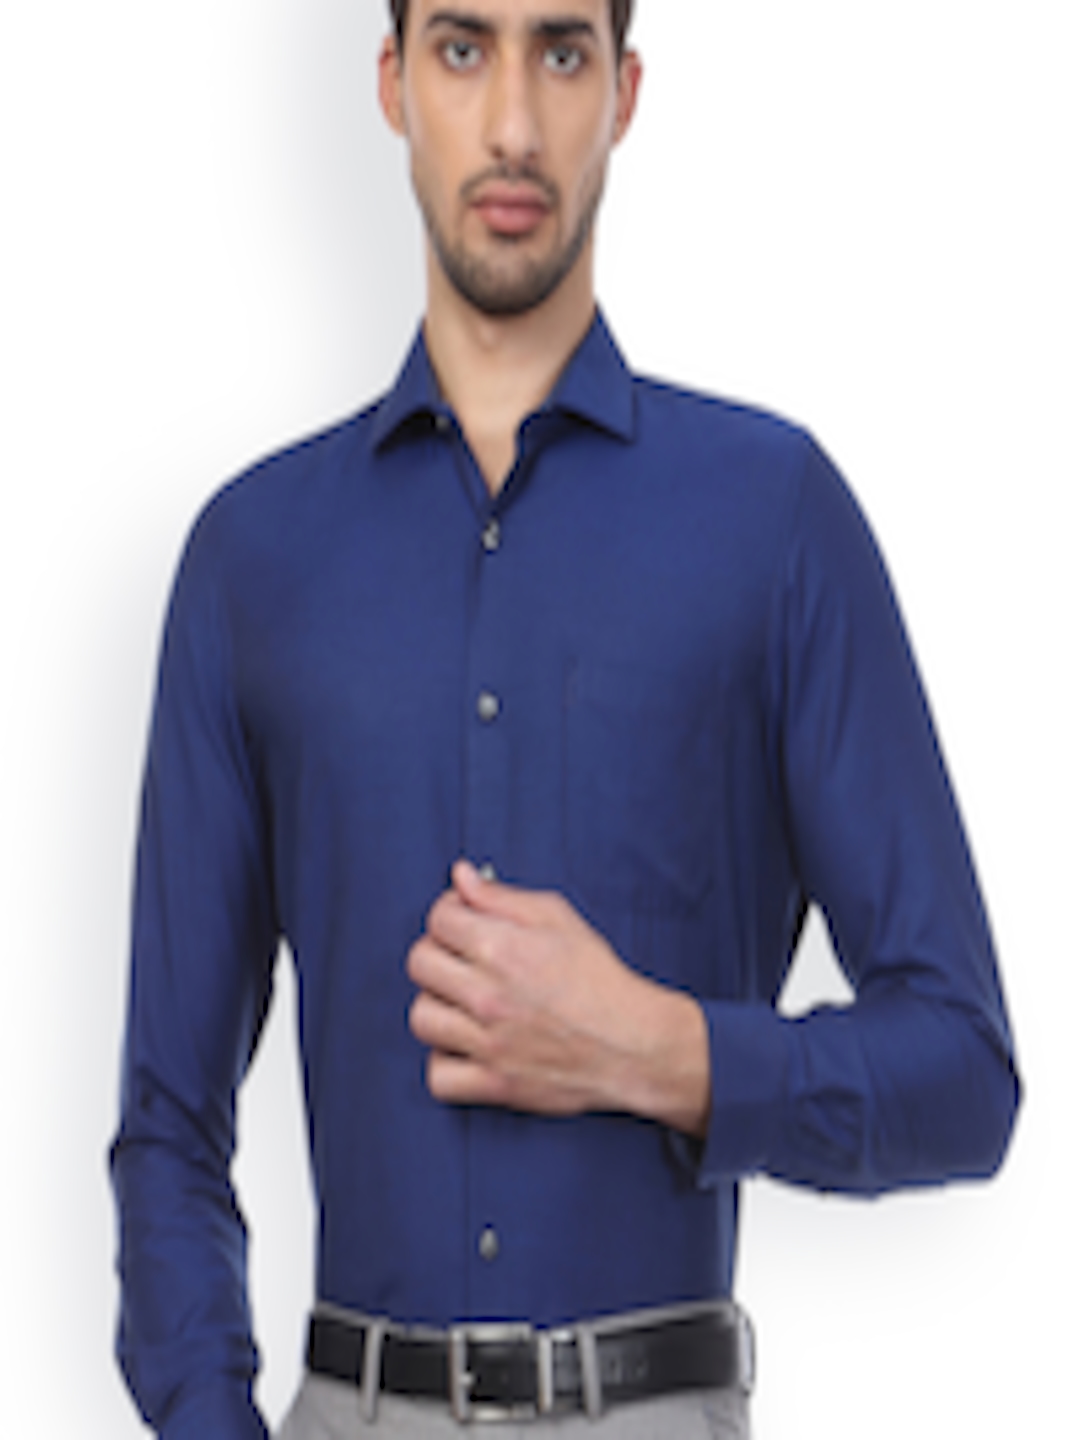 Buy Peter England Men Blue Slim Fit Solid Formal Shirt - Shirts for Men ...